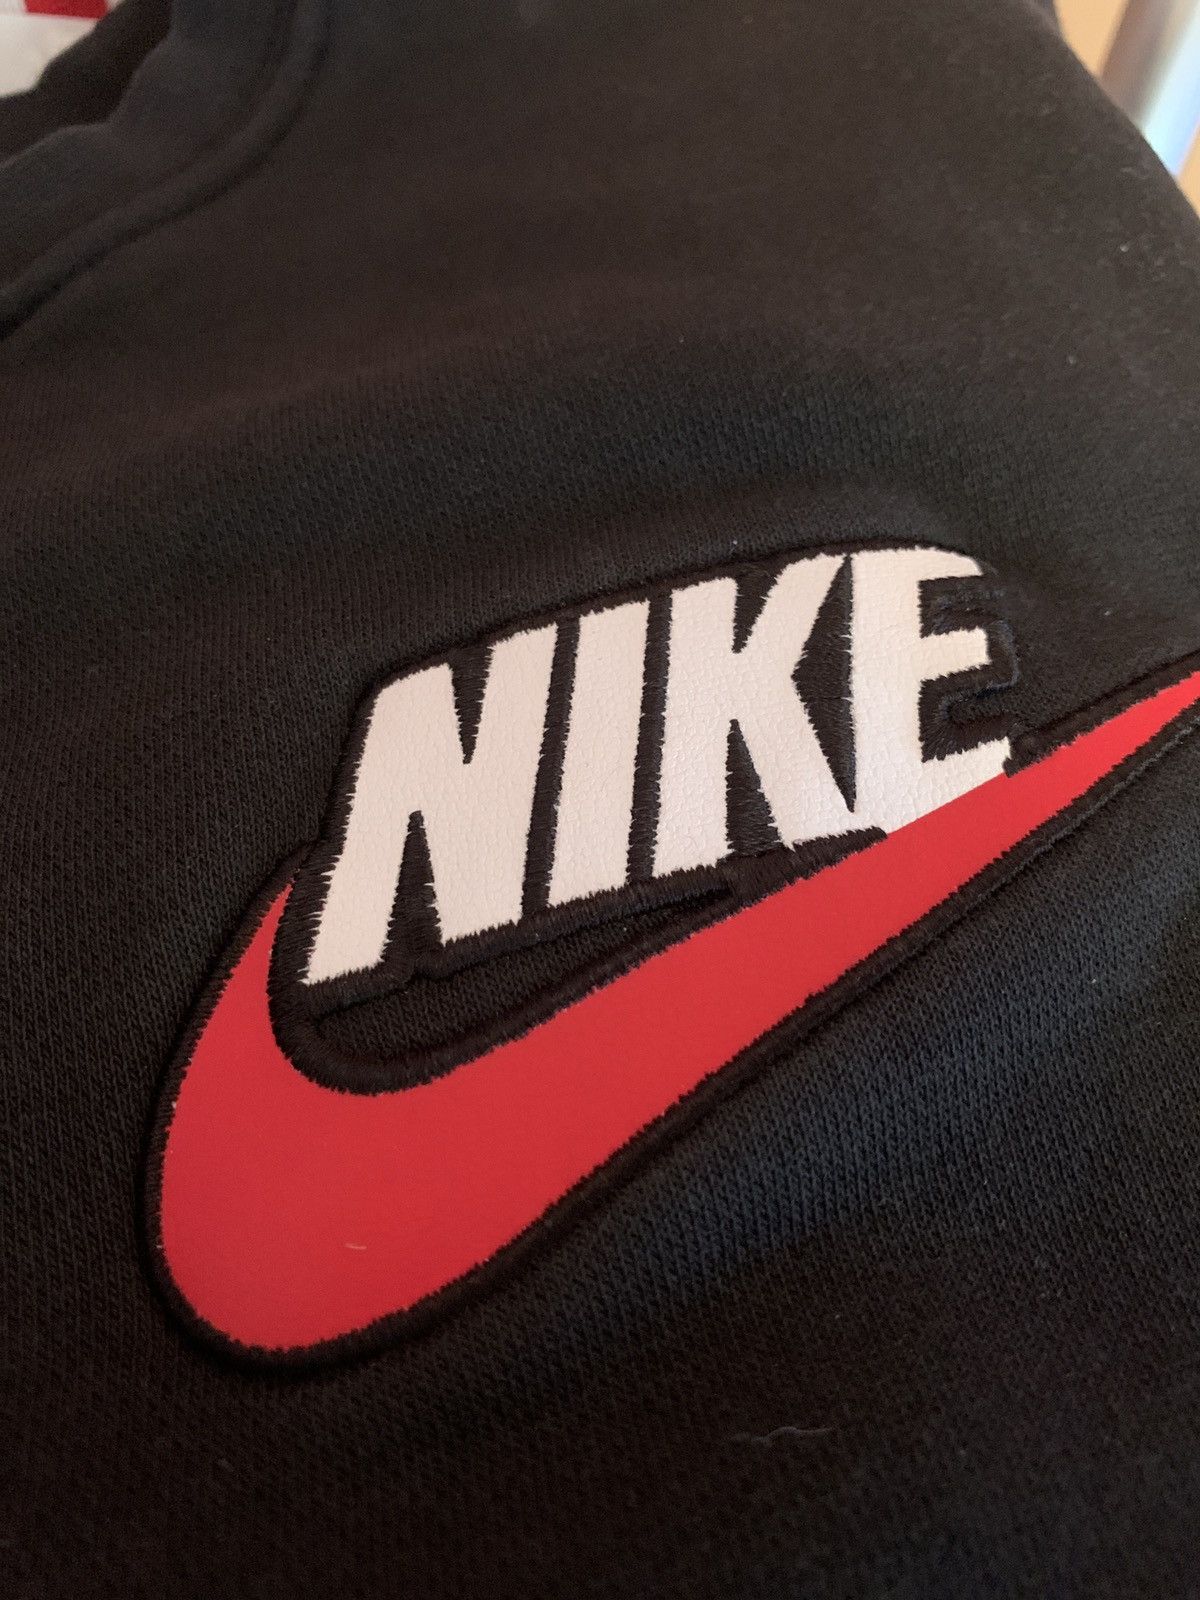 Supreme Nike Crewneck Size US L / EU 52-54 / 3 - 3 Thumbnail